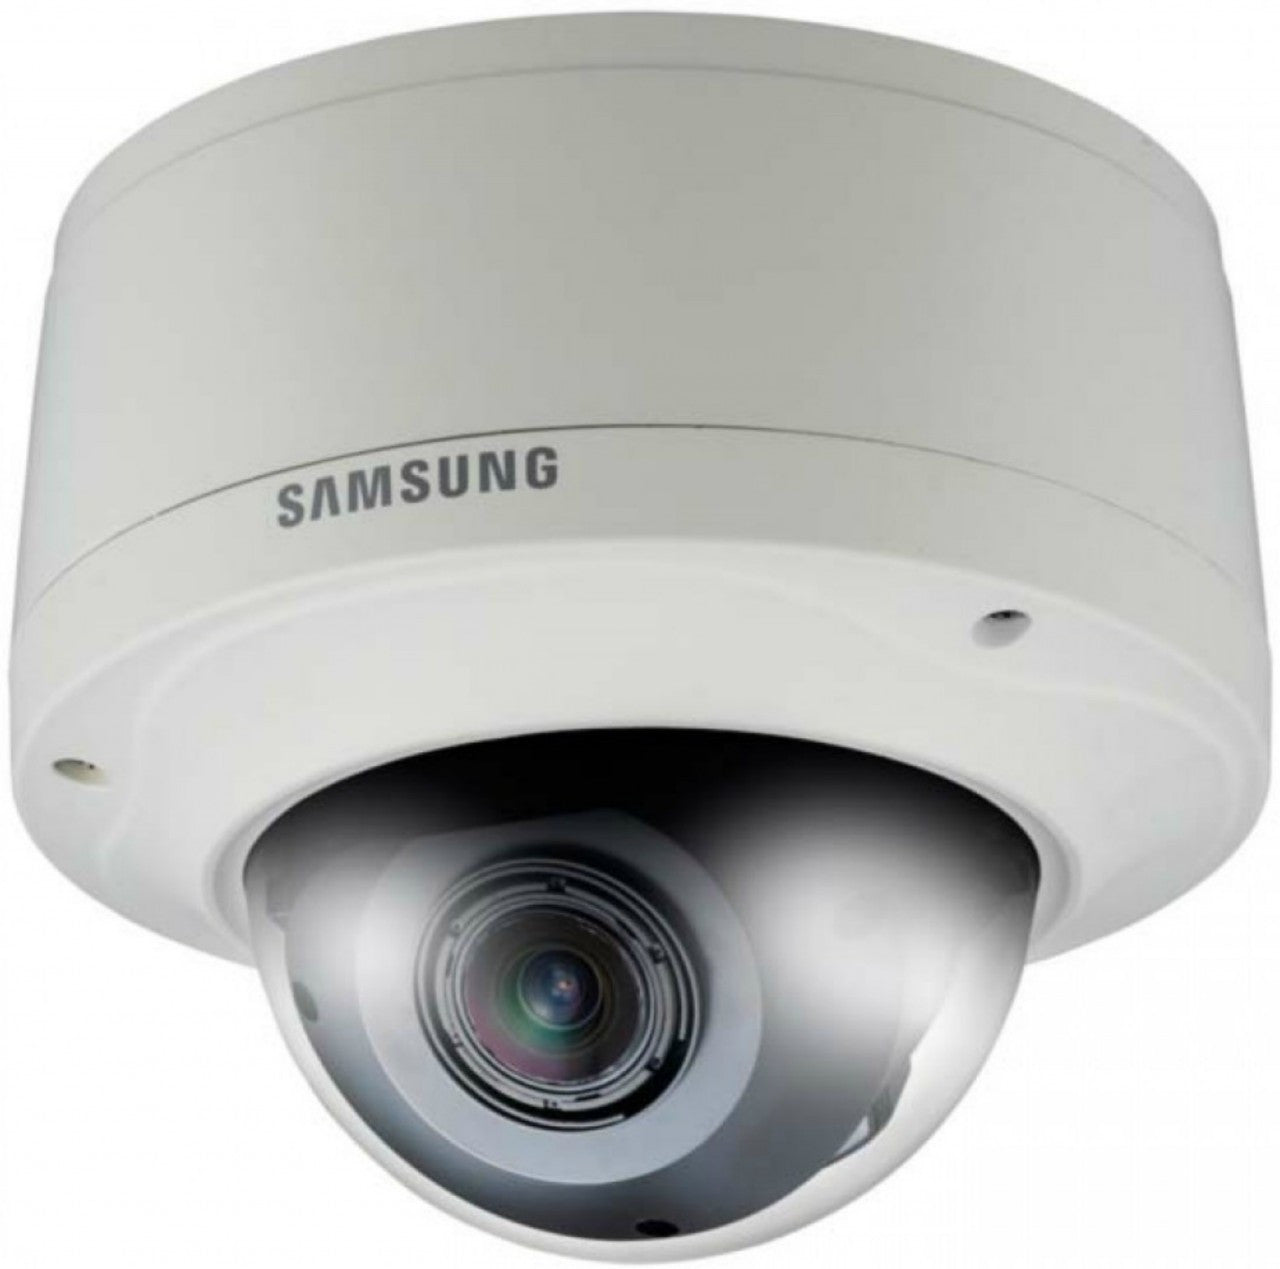 Samsung SNV-5080 1.3 Megapixel HD Vandal-Resistant Network Dome Camera